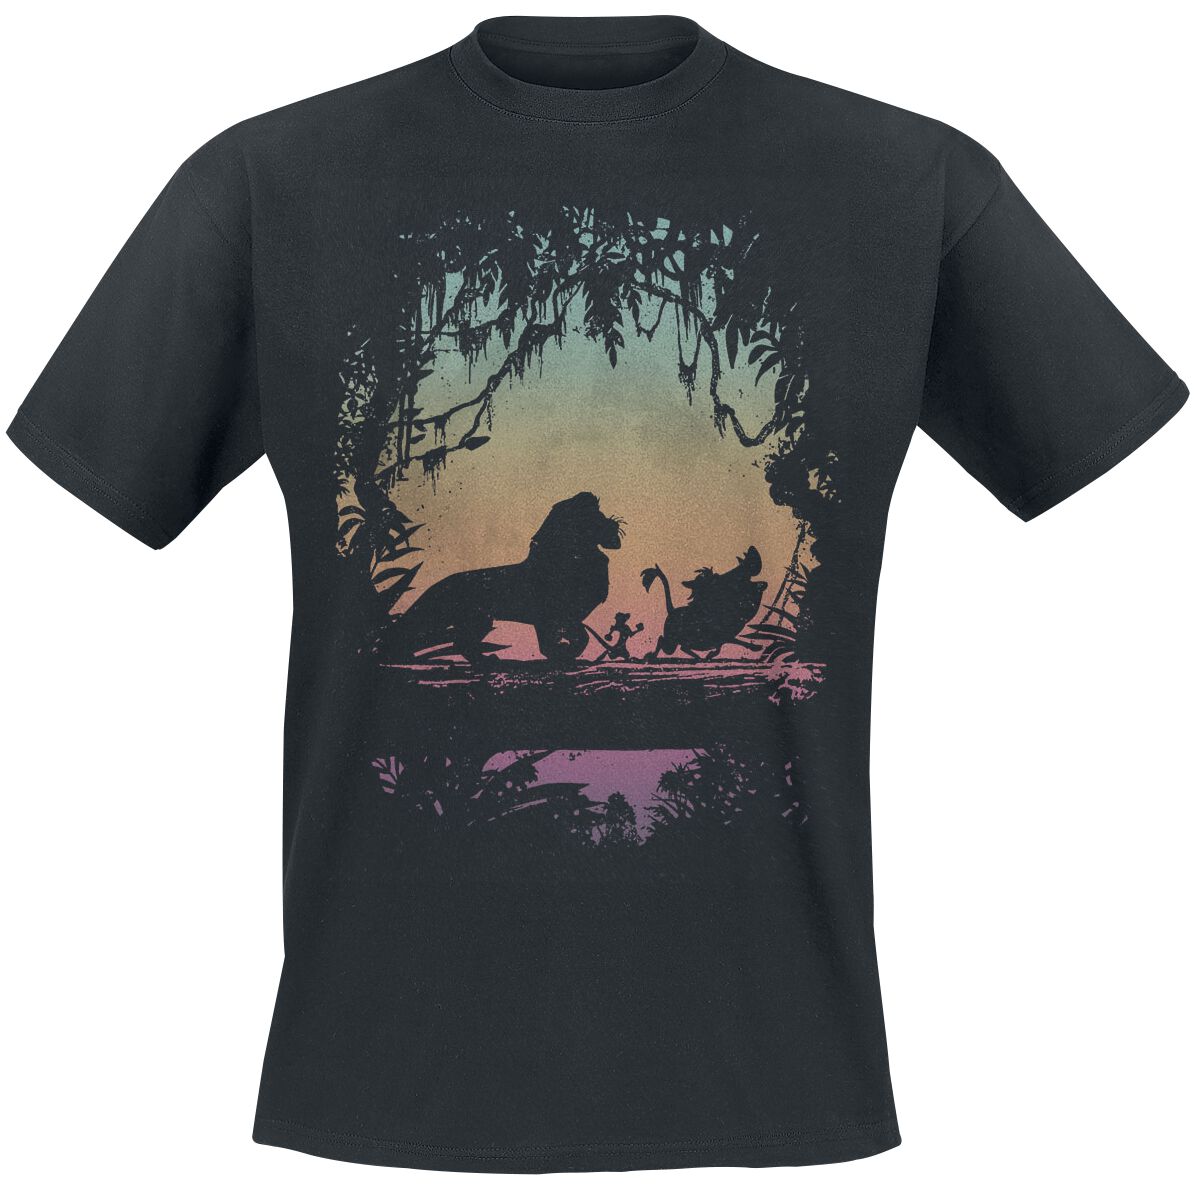 Der König der Löwen Eastern Trail T-Shirt schwarz in L